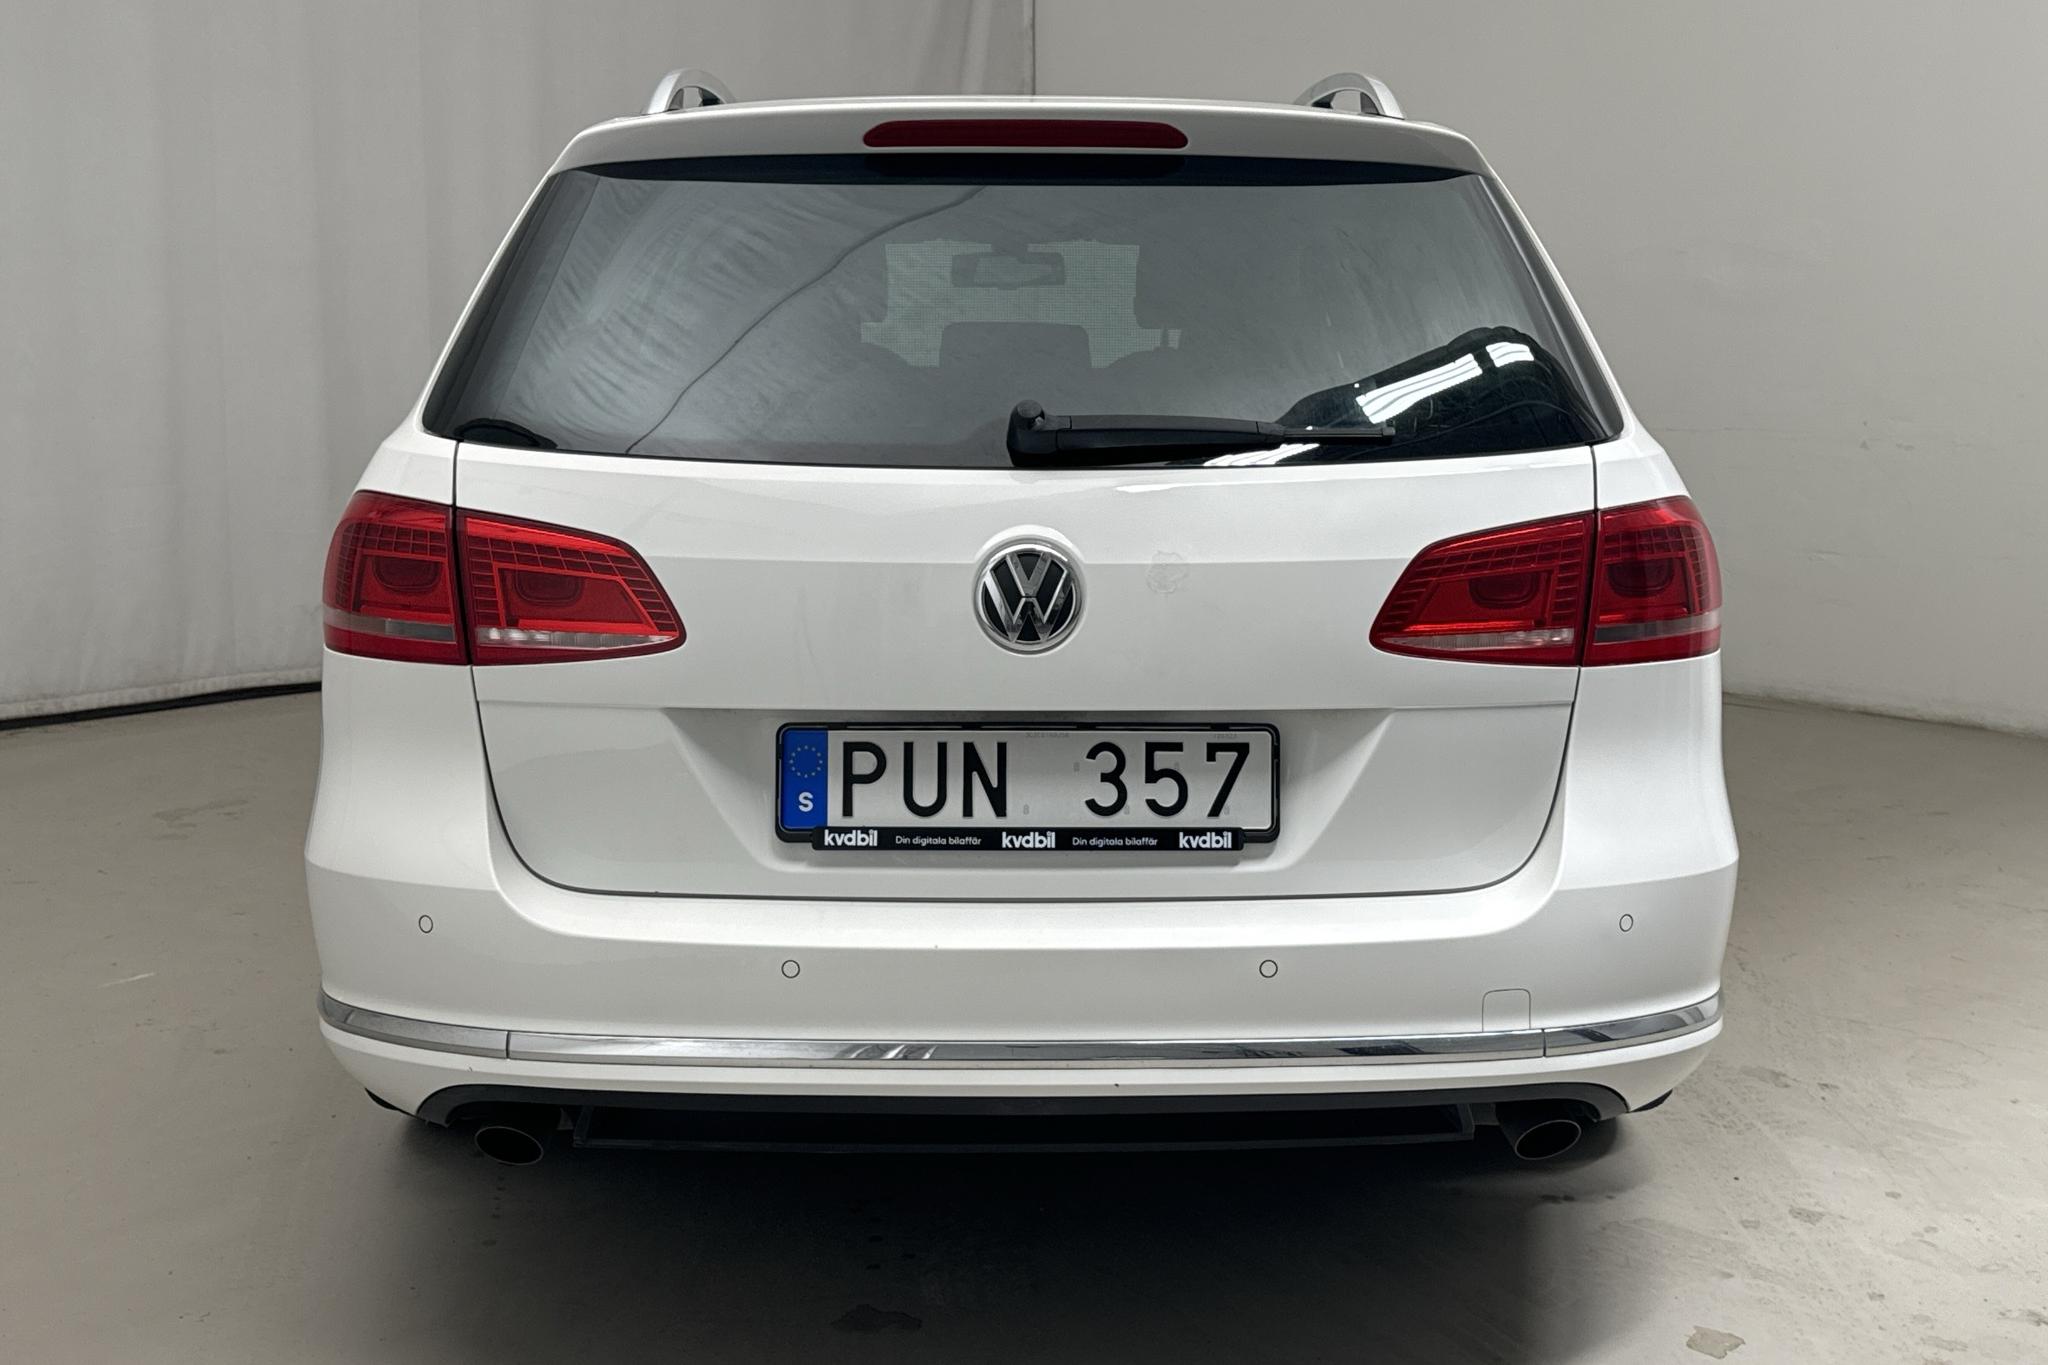 VW Passat 2.0 TDI BlueMotion Technology Variant 4Motion (170hk) - 198 680 km - Automaattinen - valkoinen - 2012